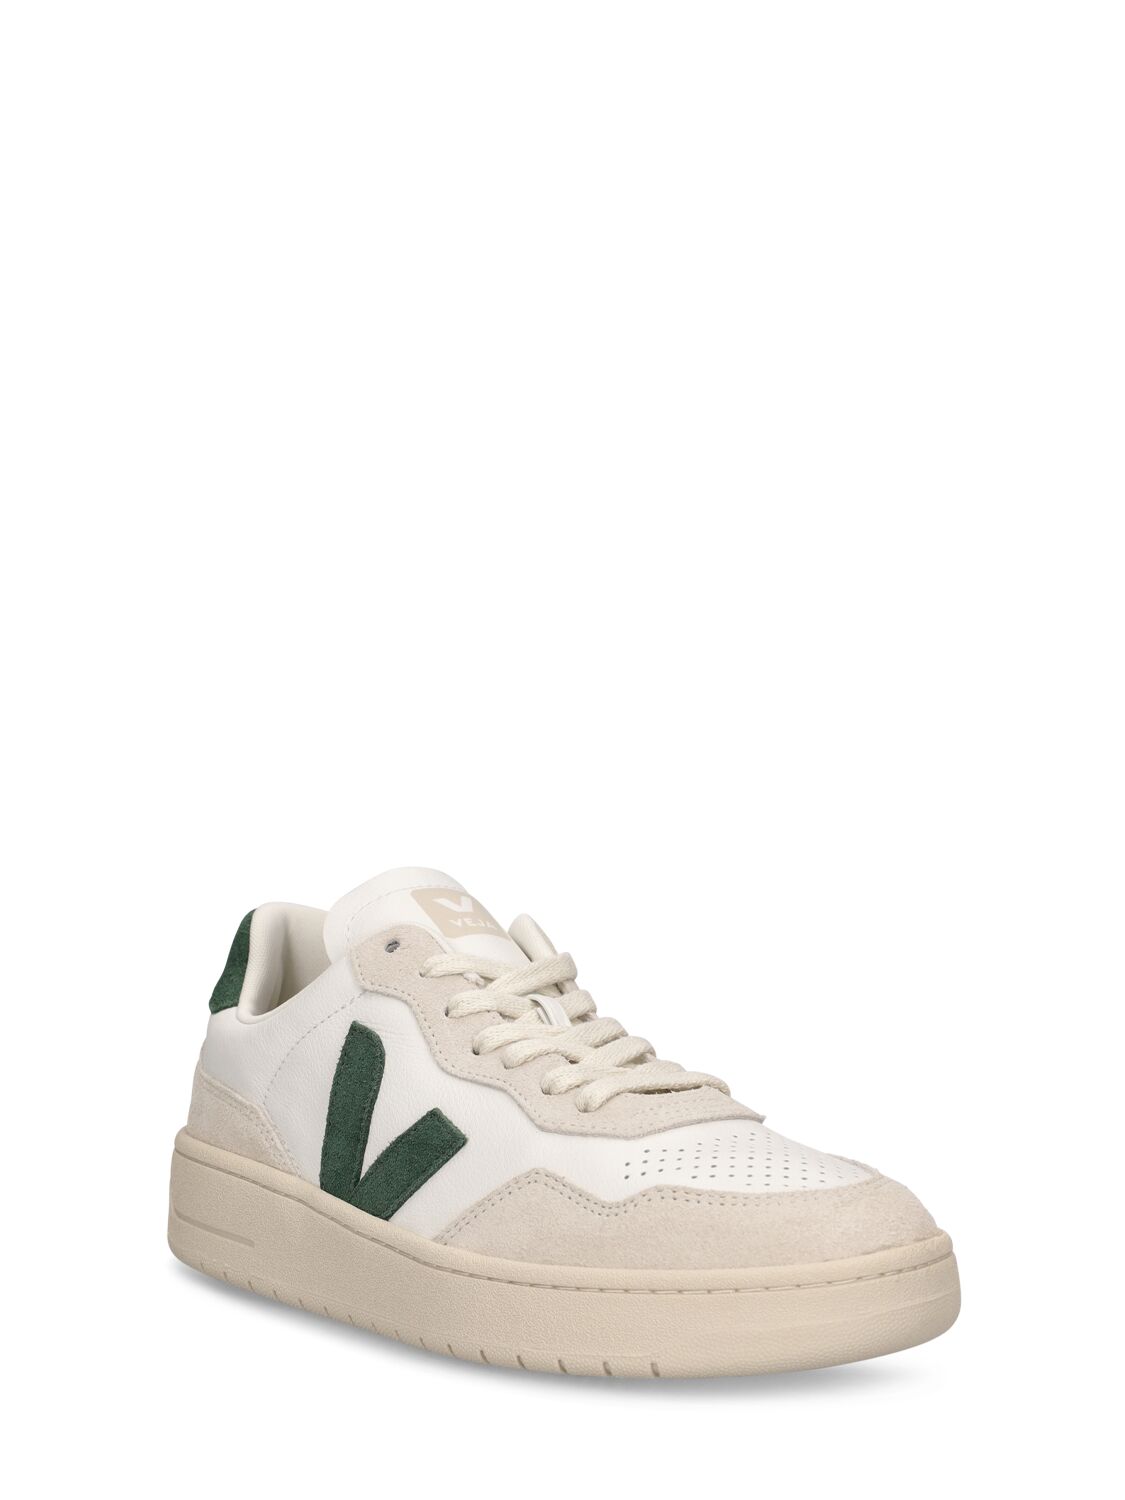 Shop Veja V-90 Leather Sneakers In White